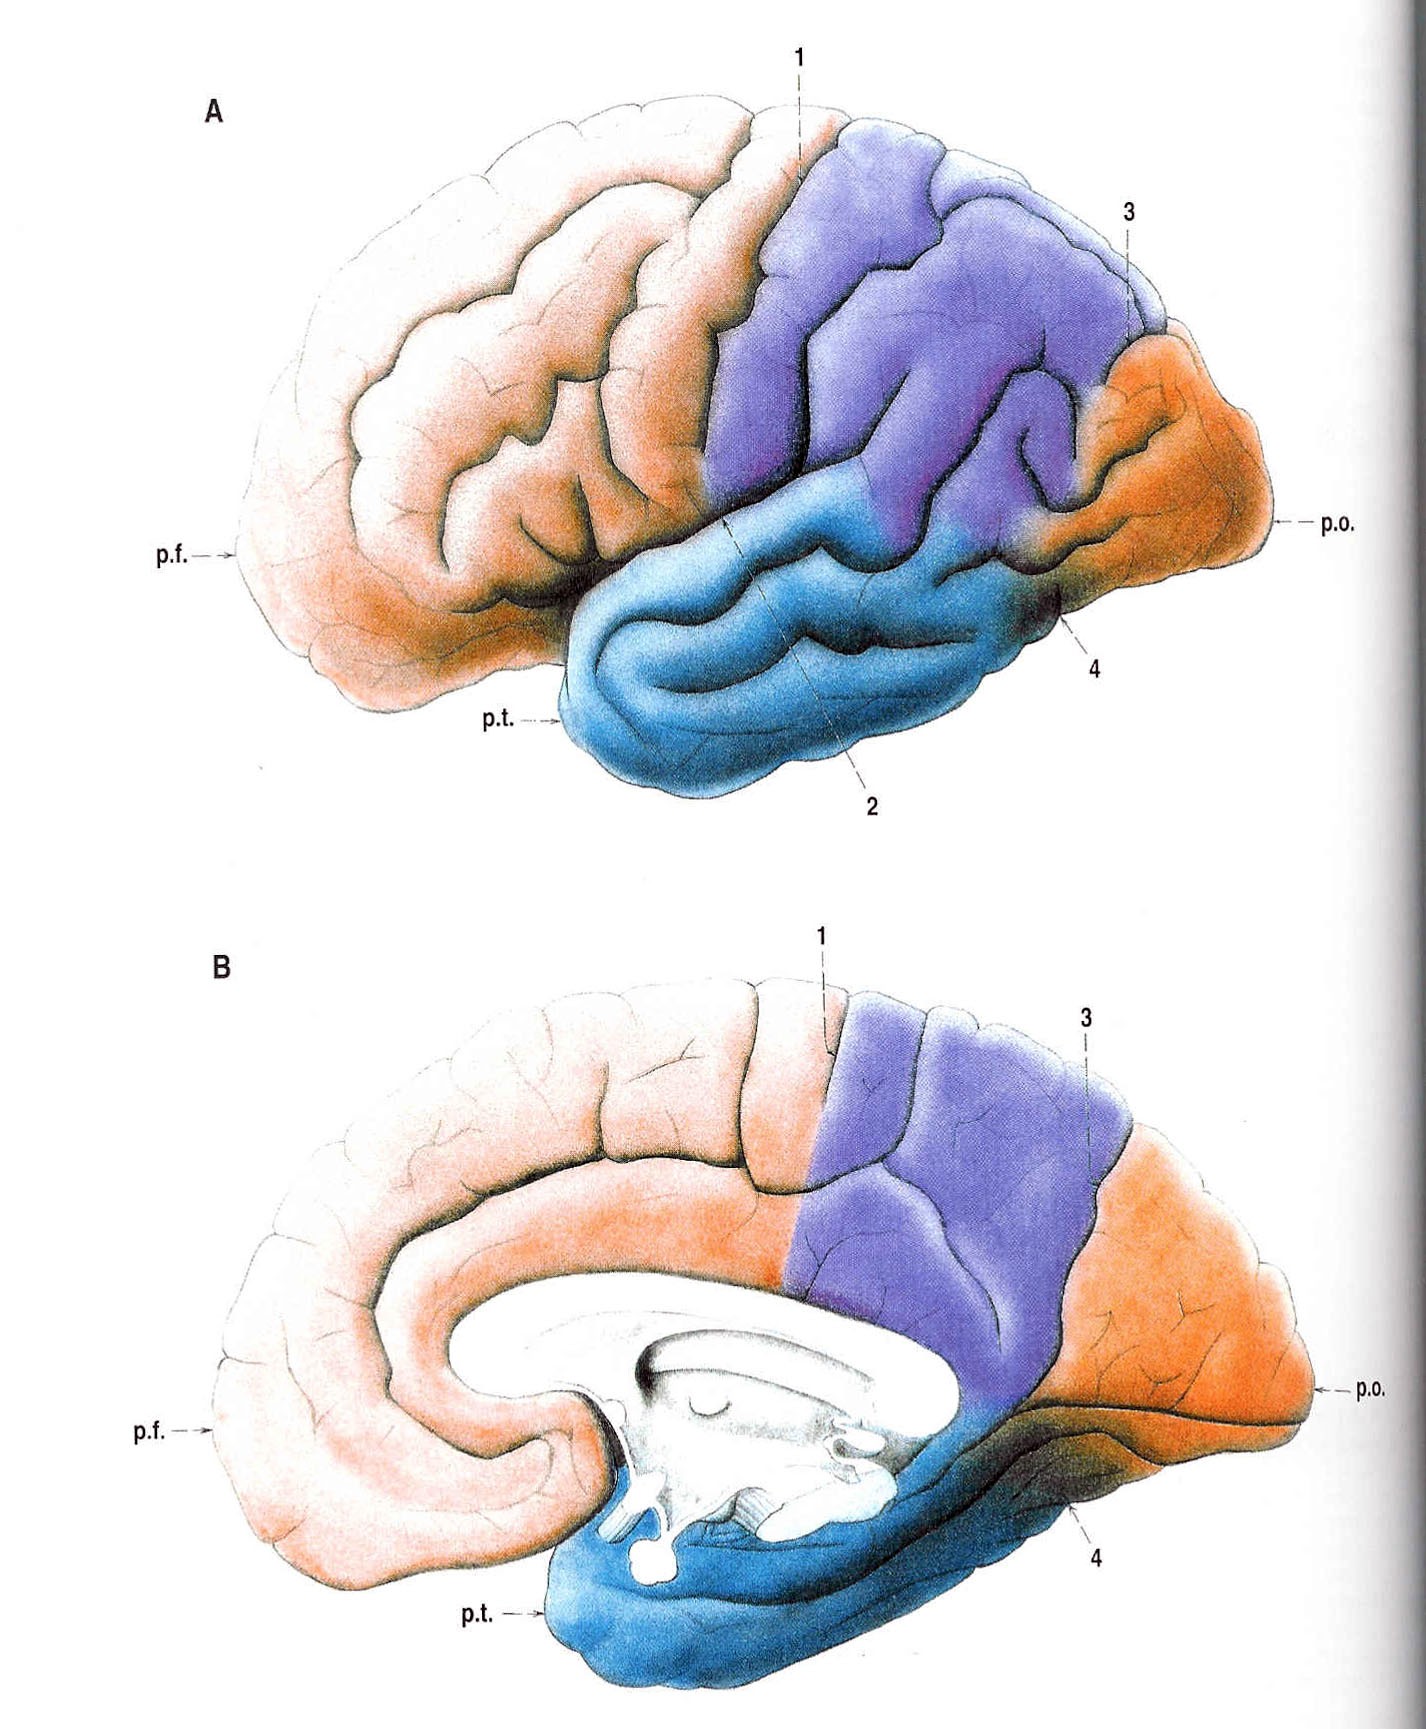 Obr. 23 Laloky hemisfér koncového mozku (ČIHÁK, 1997).